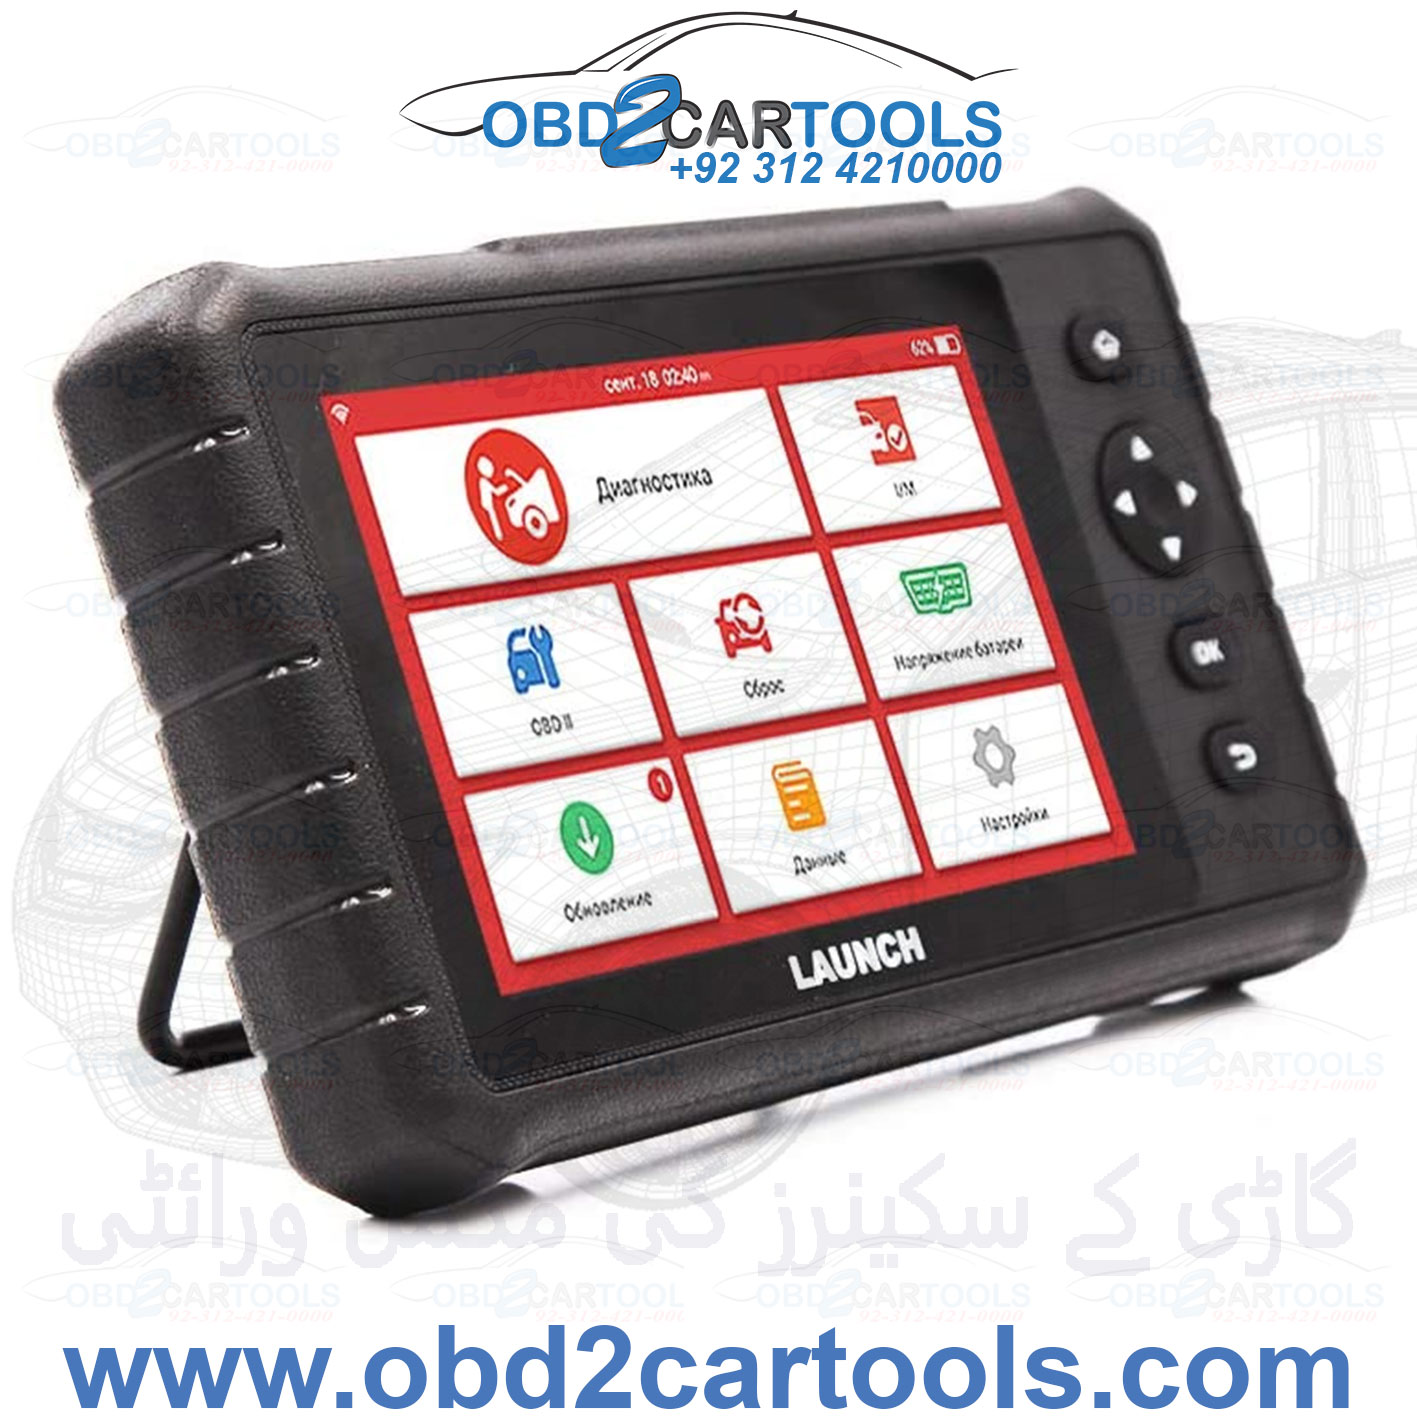 Product image for CRP349 Creader Professional Code Reader OBD2 Car Scanner